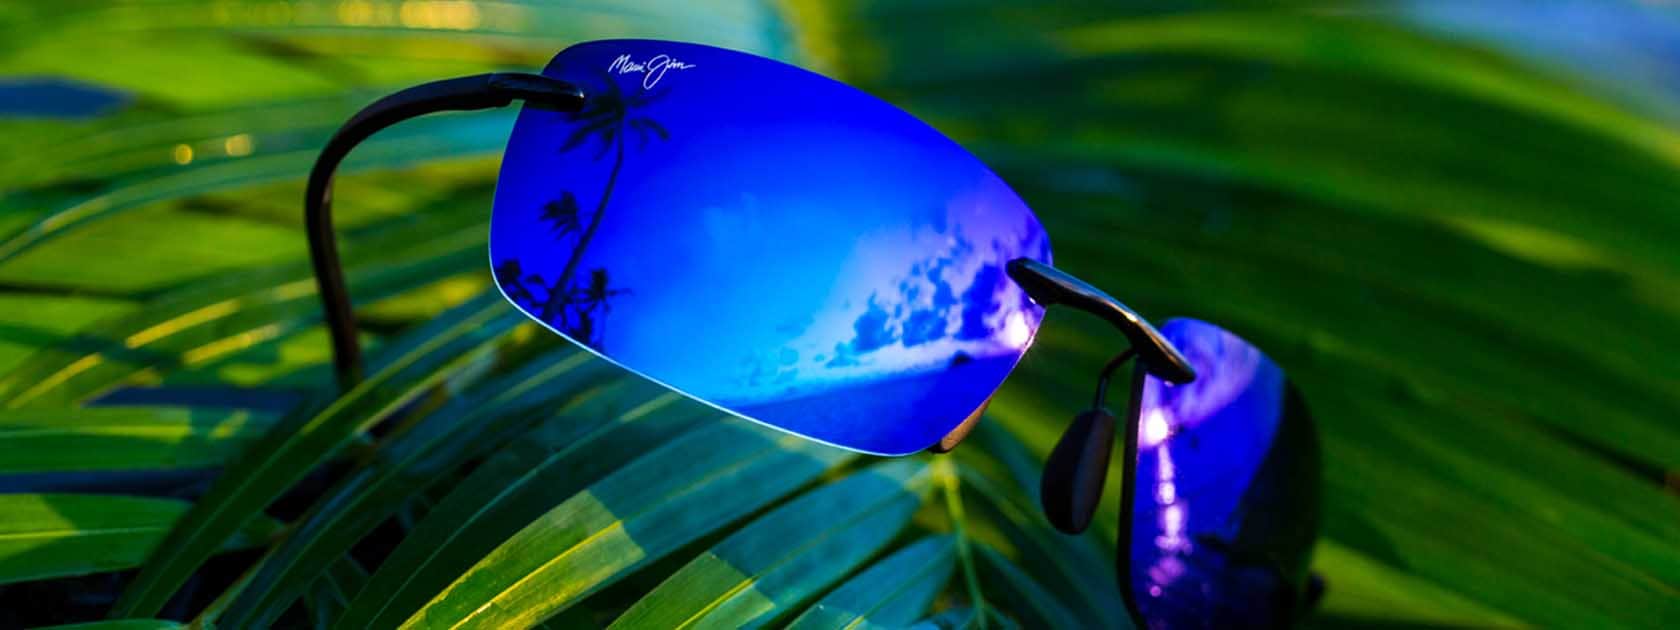 lunettes de soleil cerclées avec verres bleus présentées sur feuilles de palmier